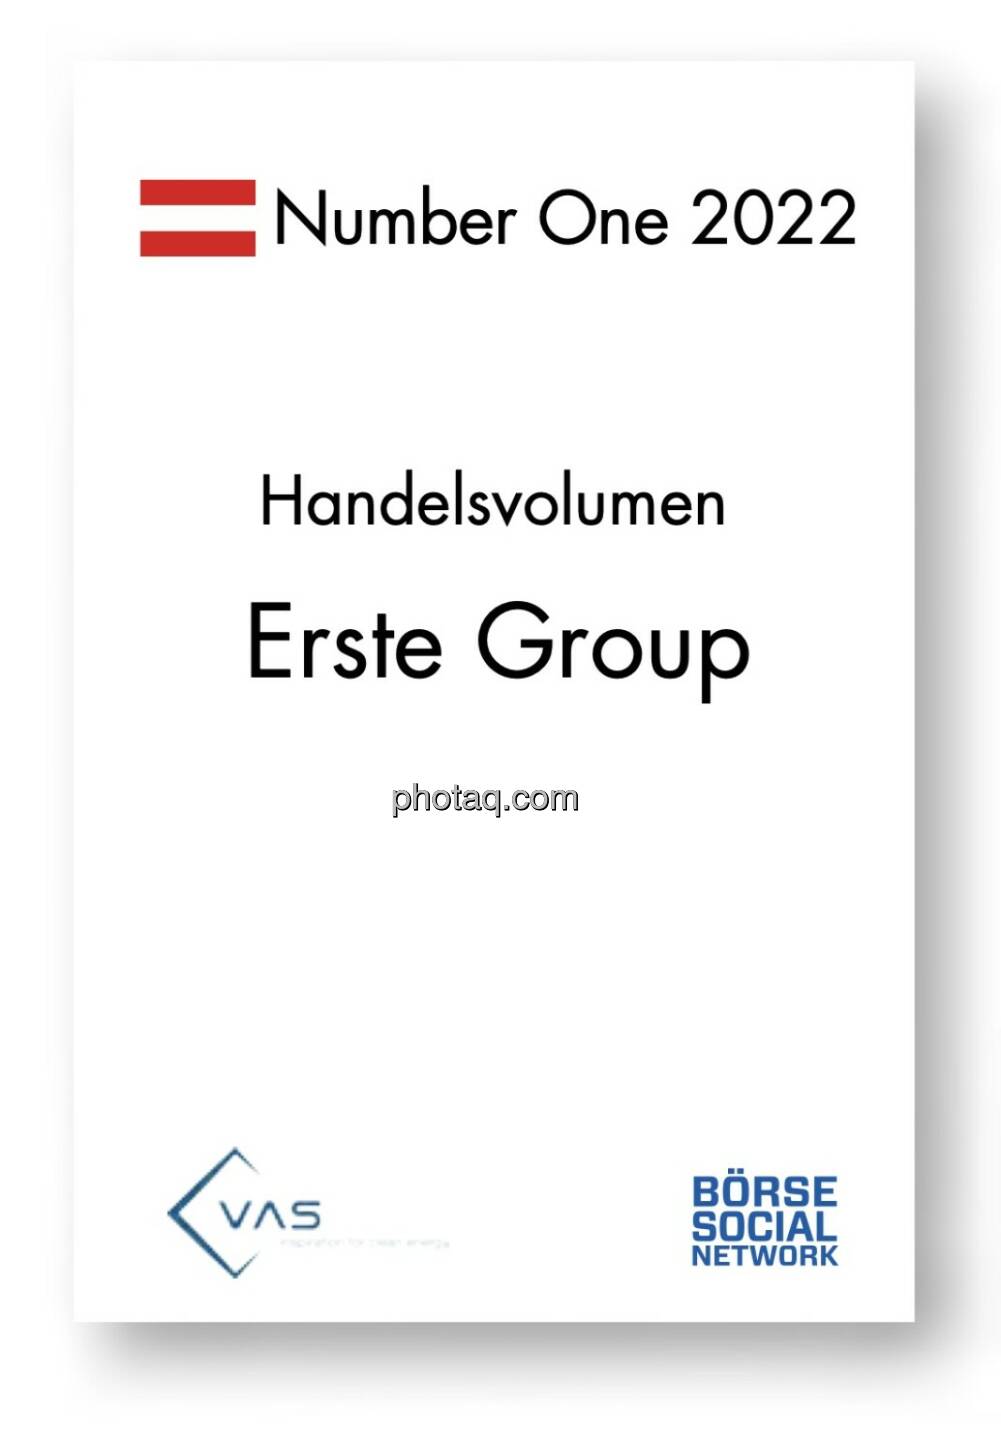 Number One Handelsvolumen: Erste Group